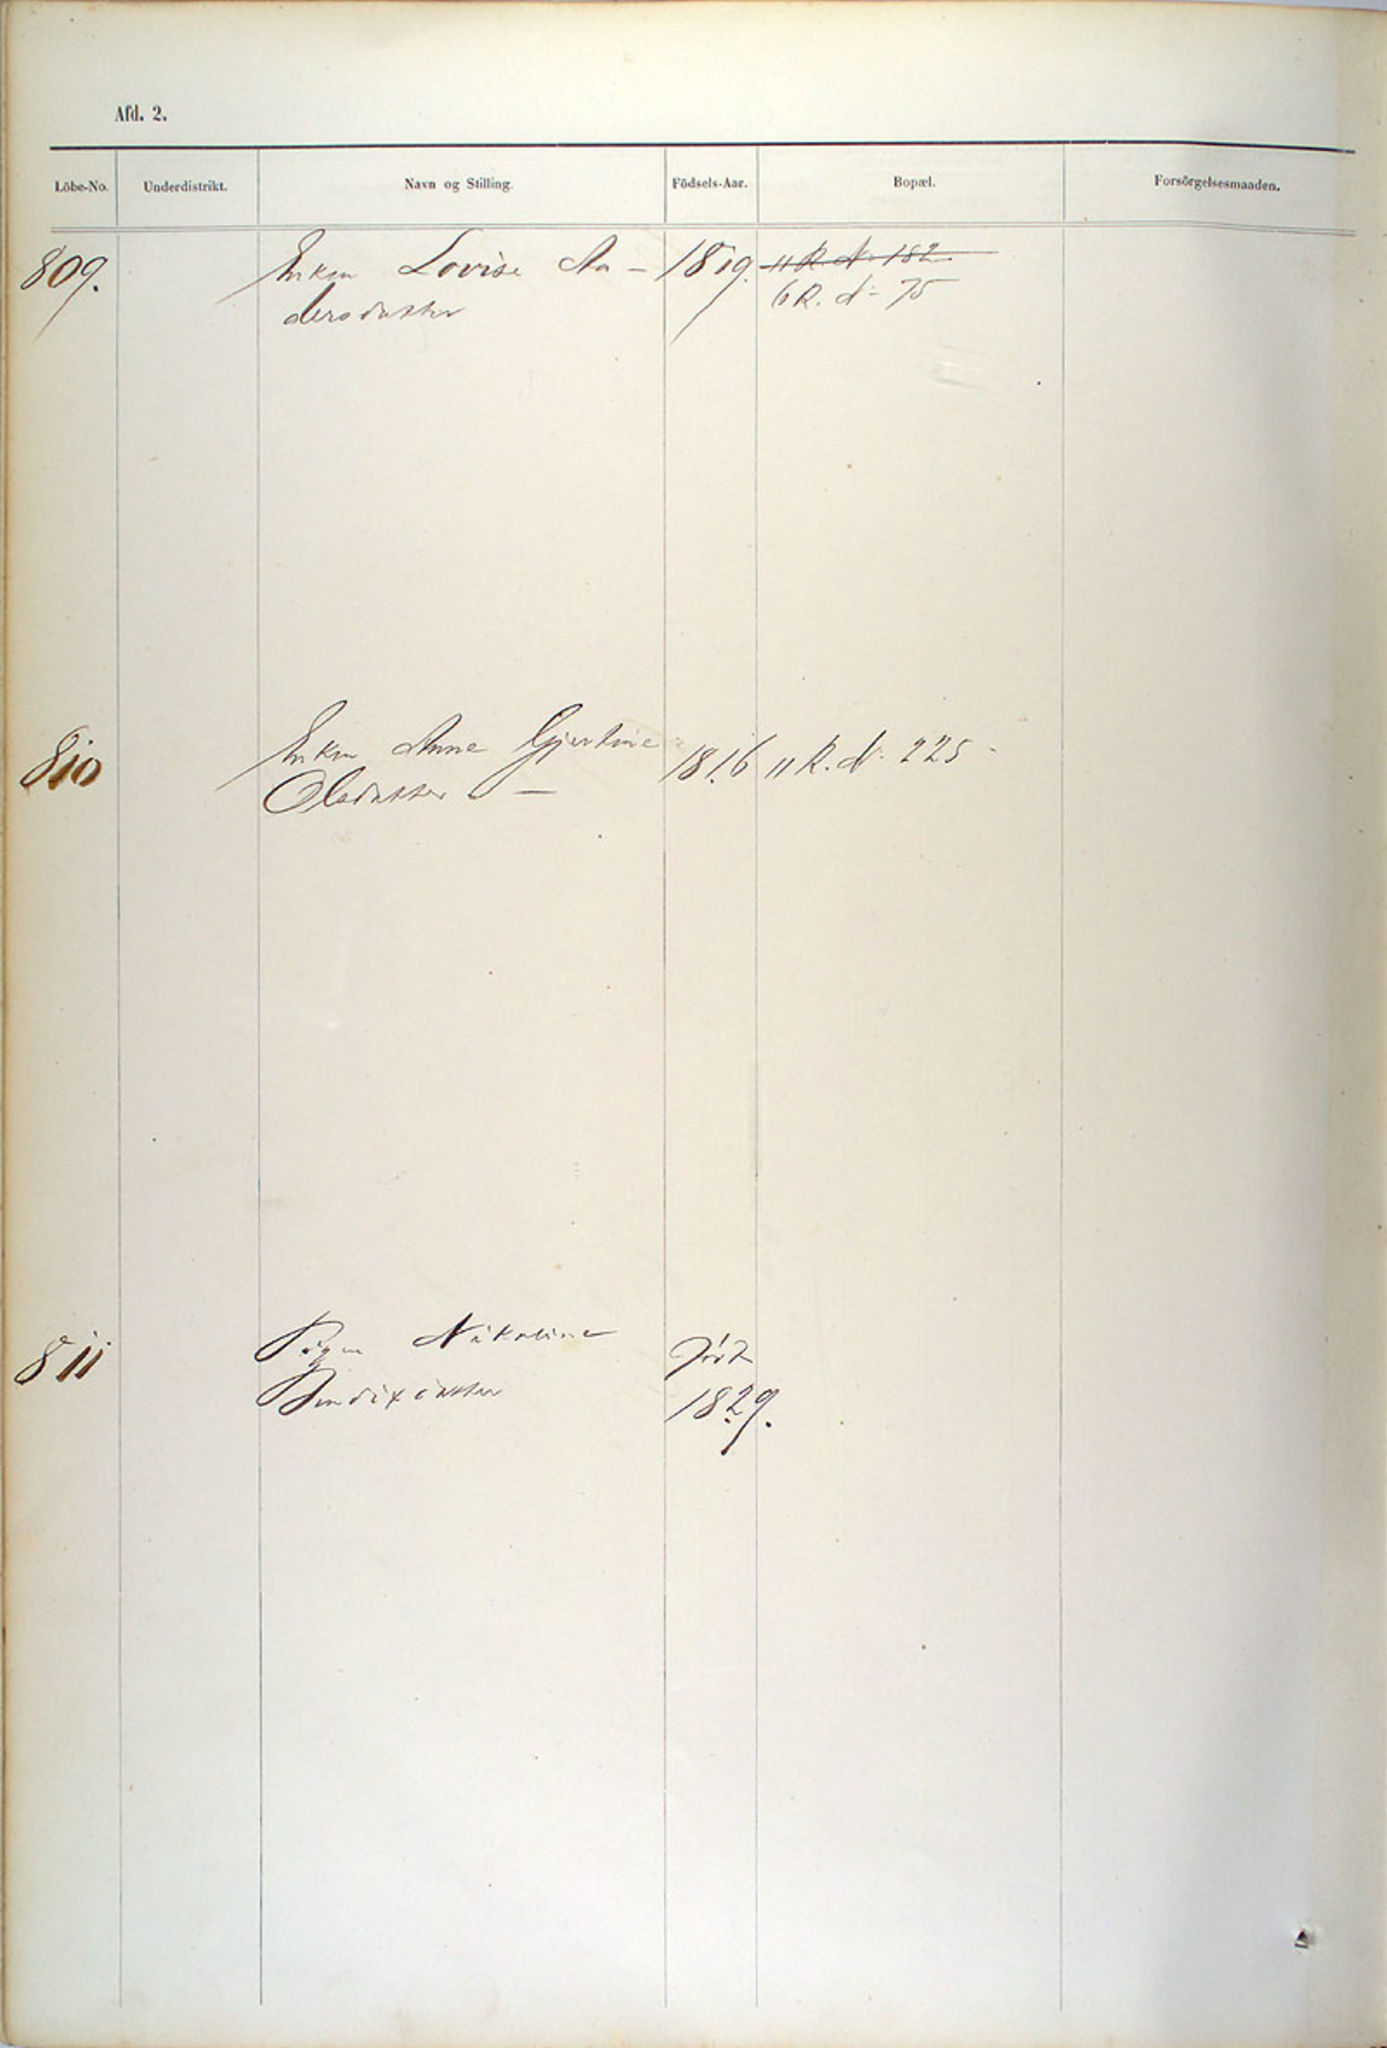 Bergen fattigvesen, BBA/-, 1864-1878, s. 415a